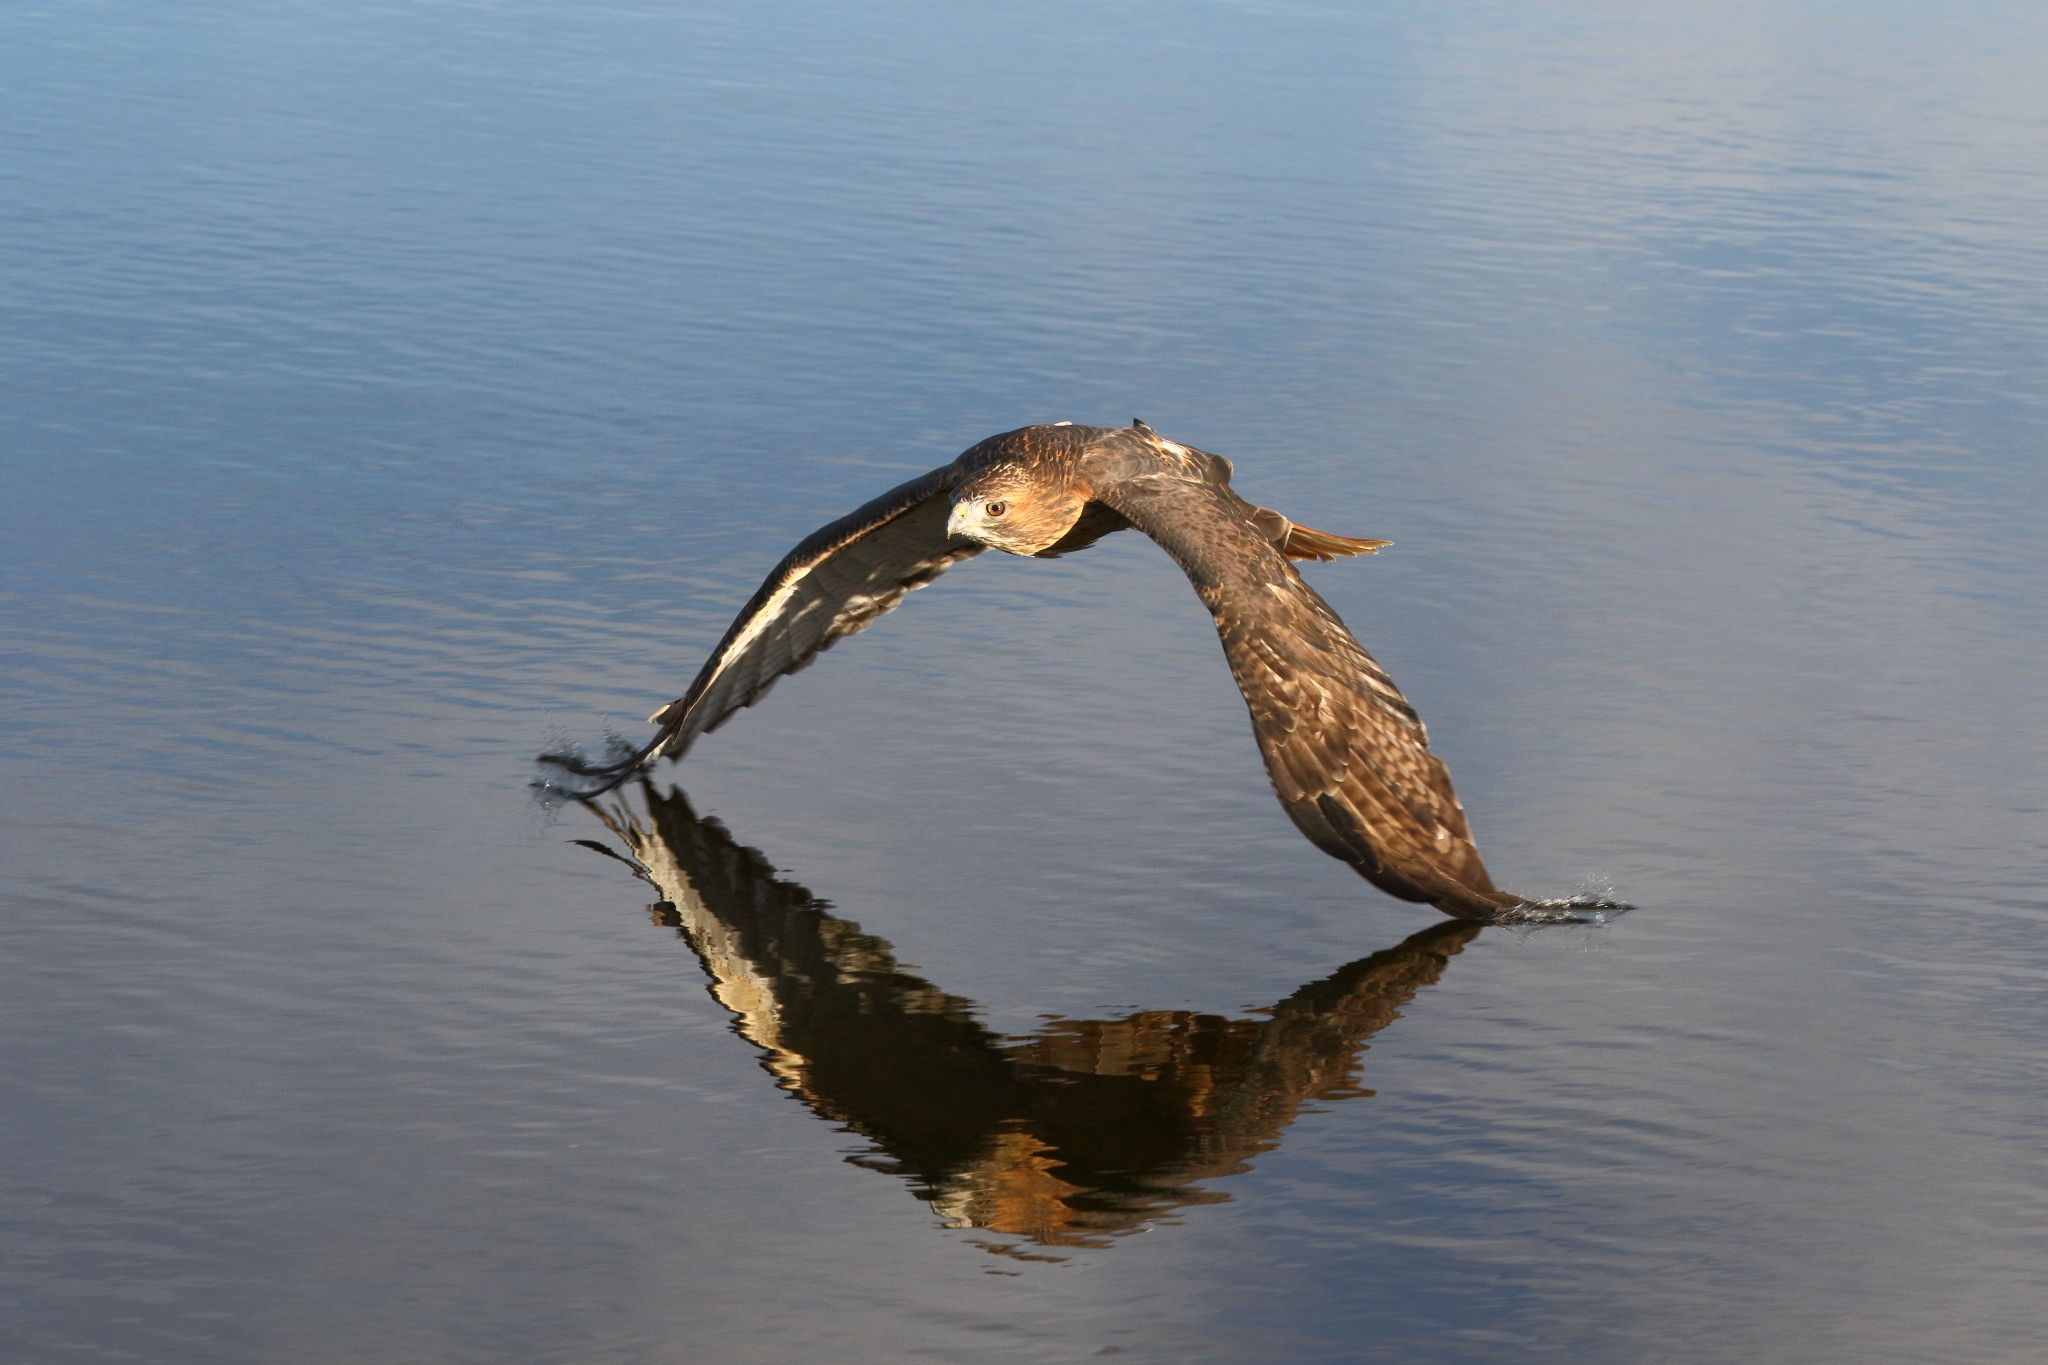 A bird flies over a body of water.